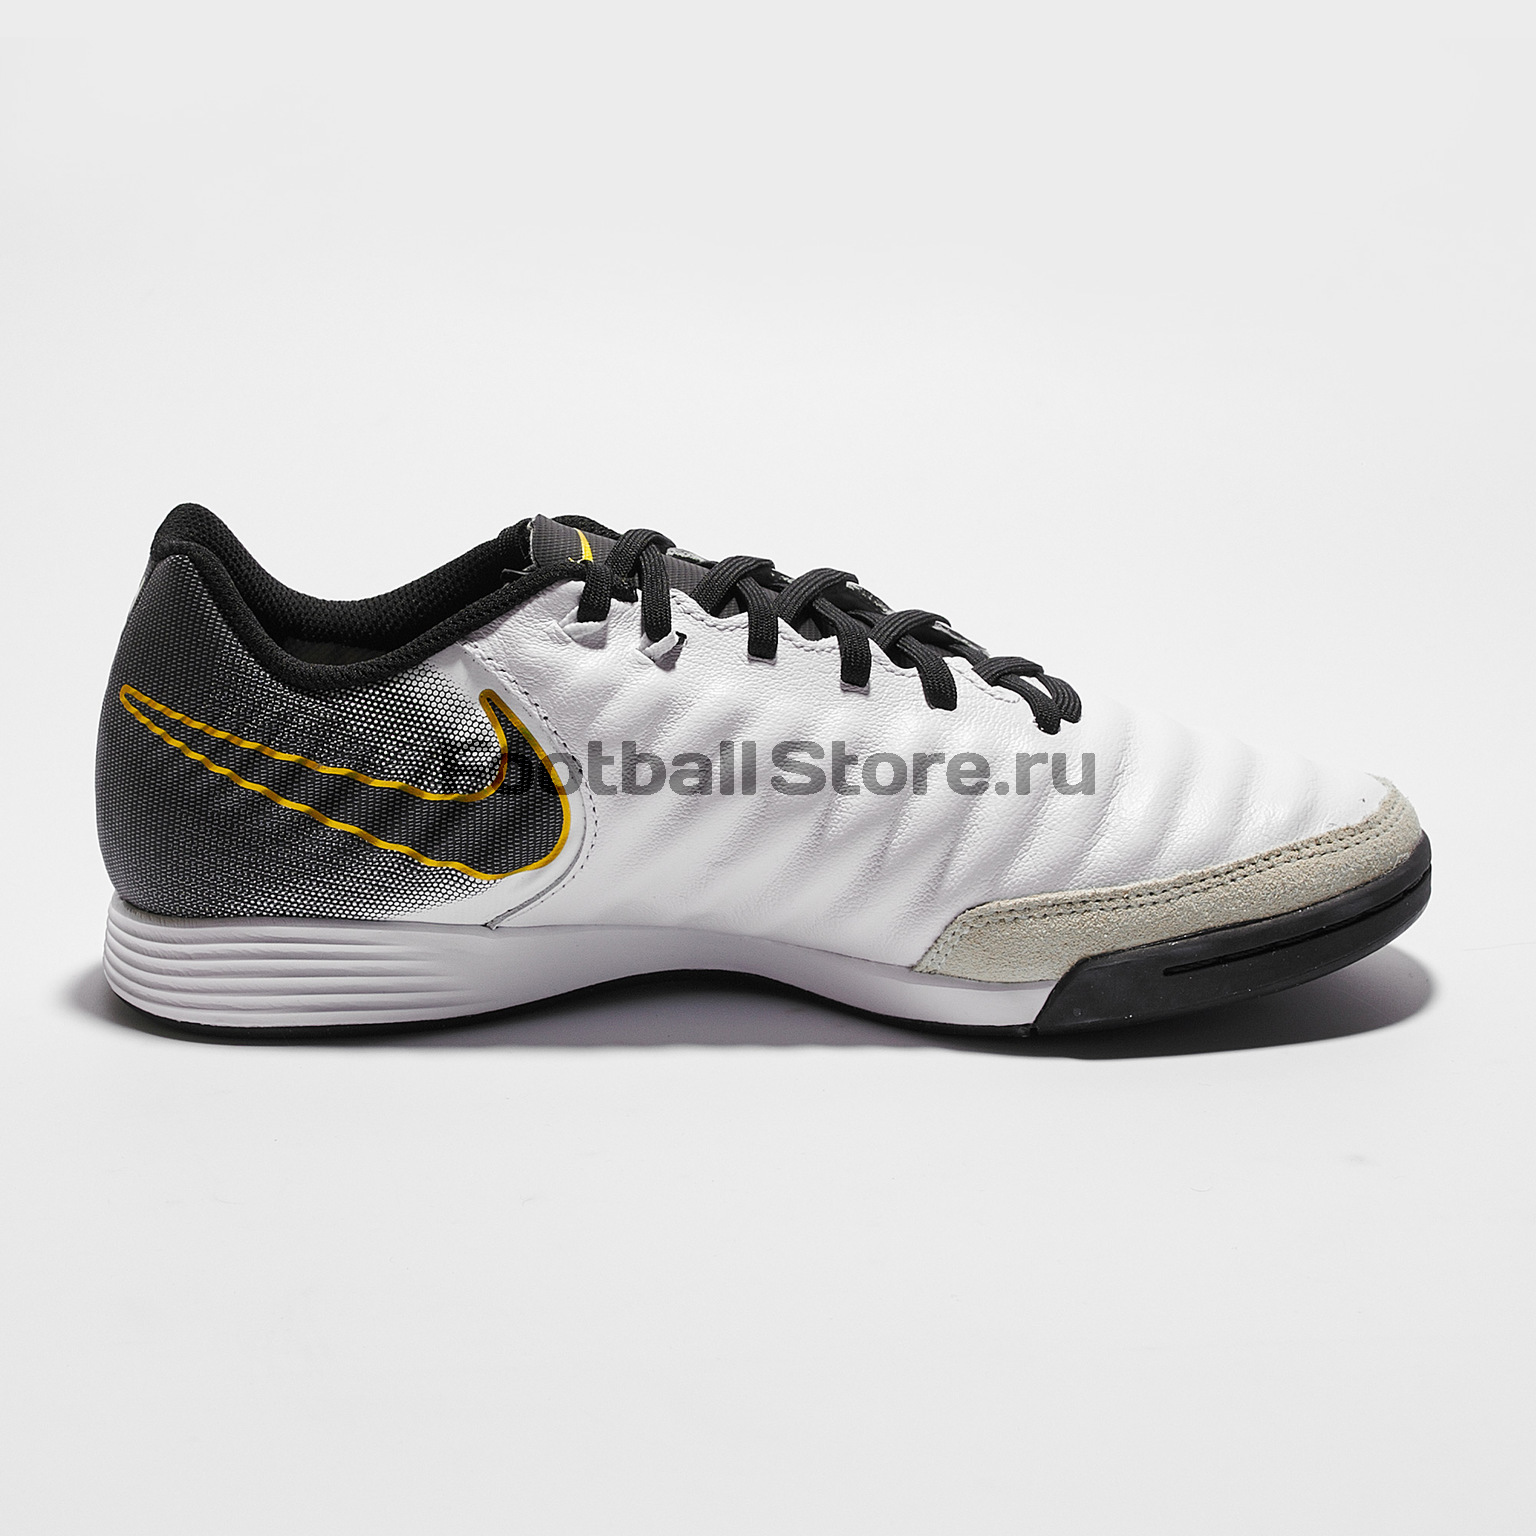 Обувь для зала Nike LegendX 7 Academy IC AH7244-100